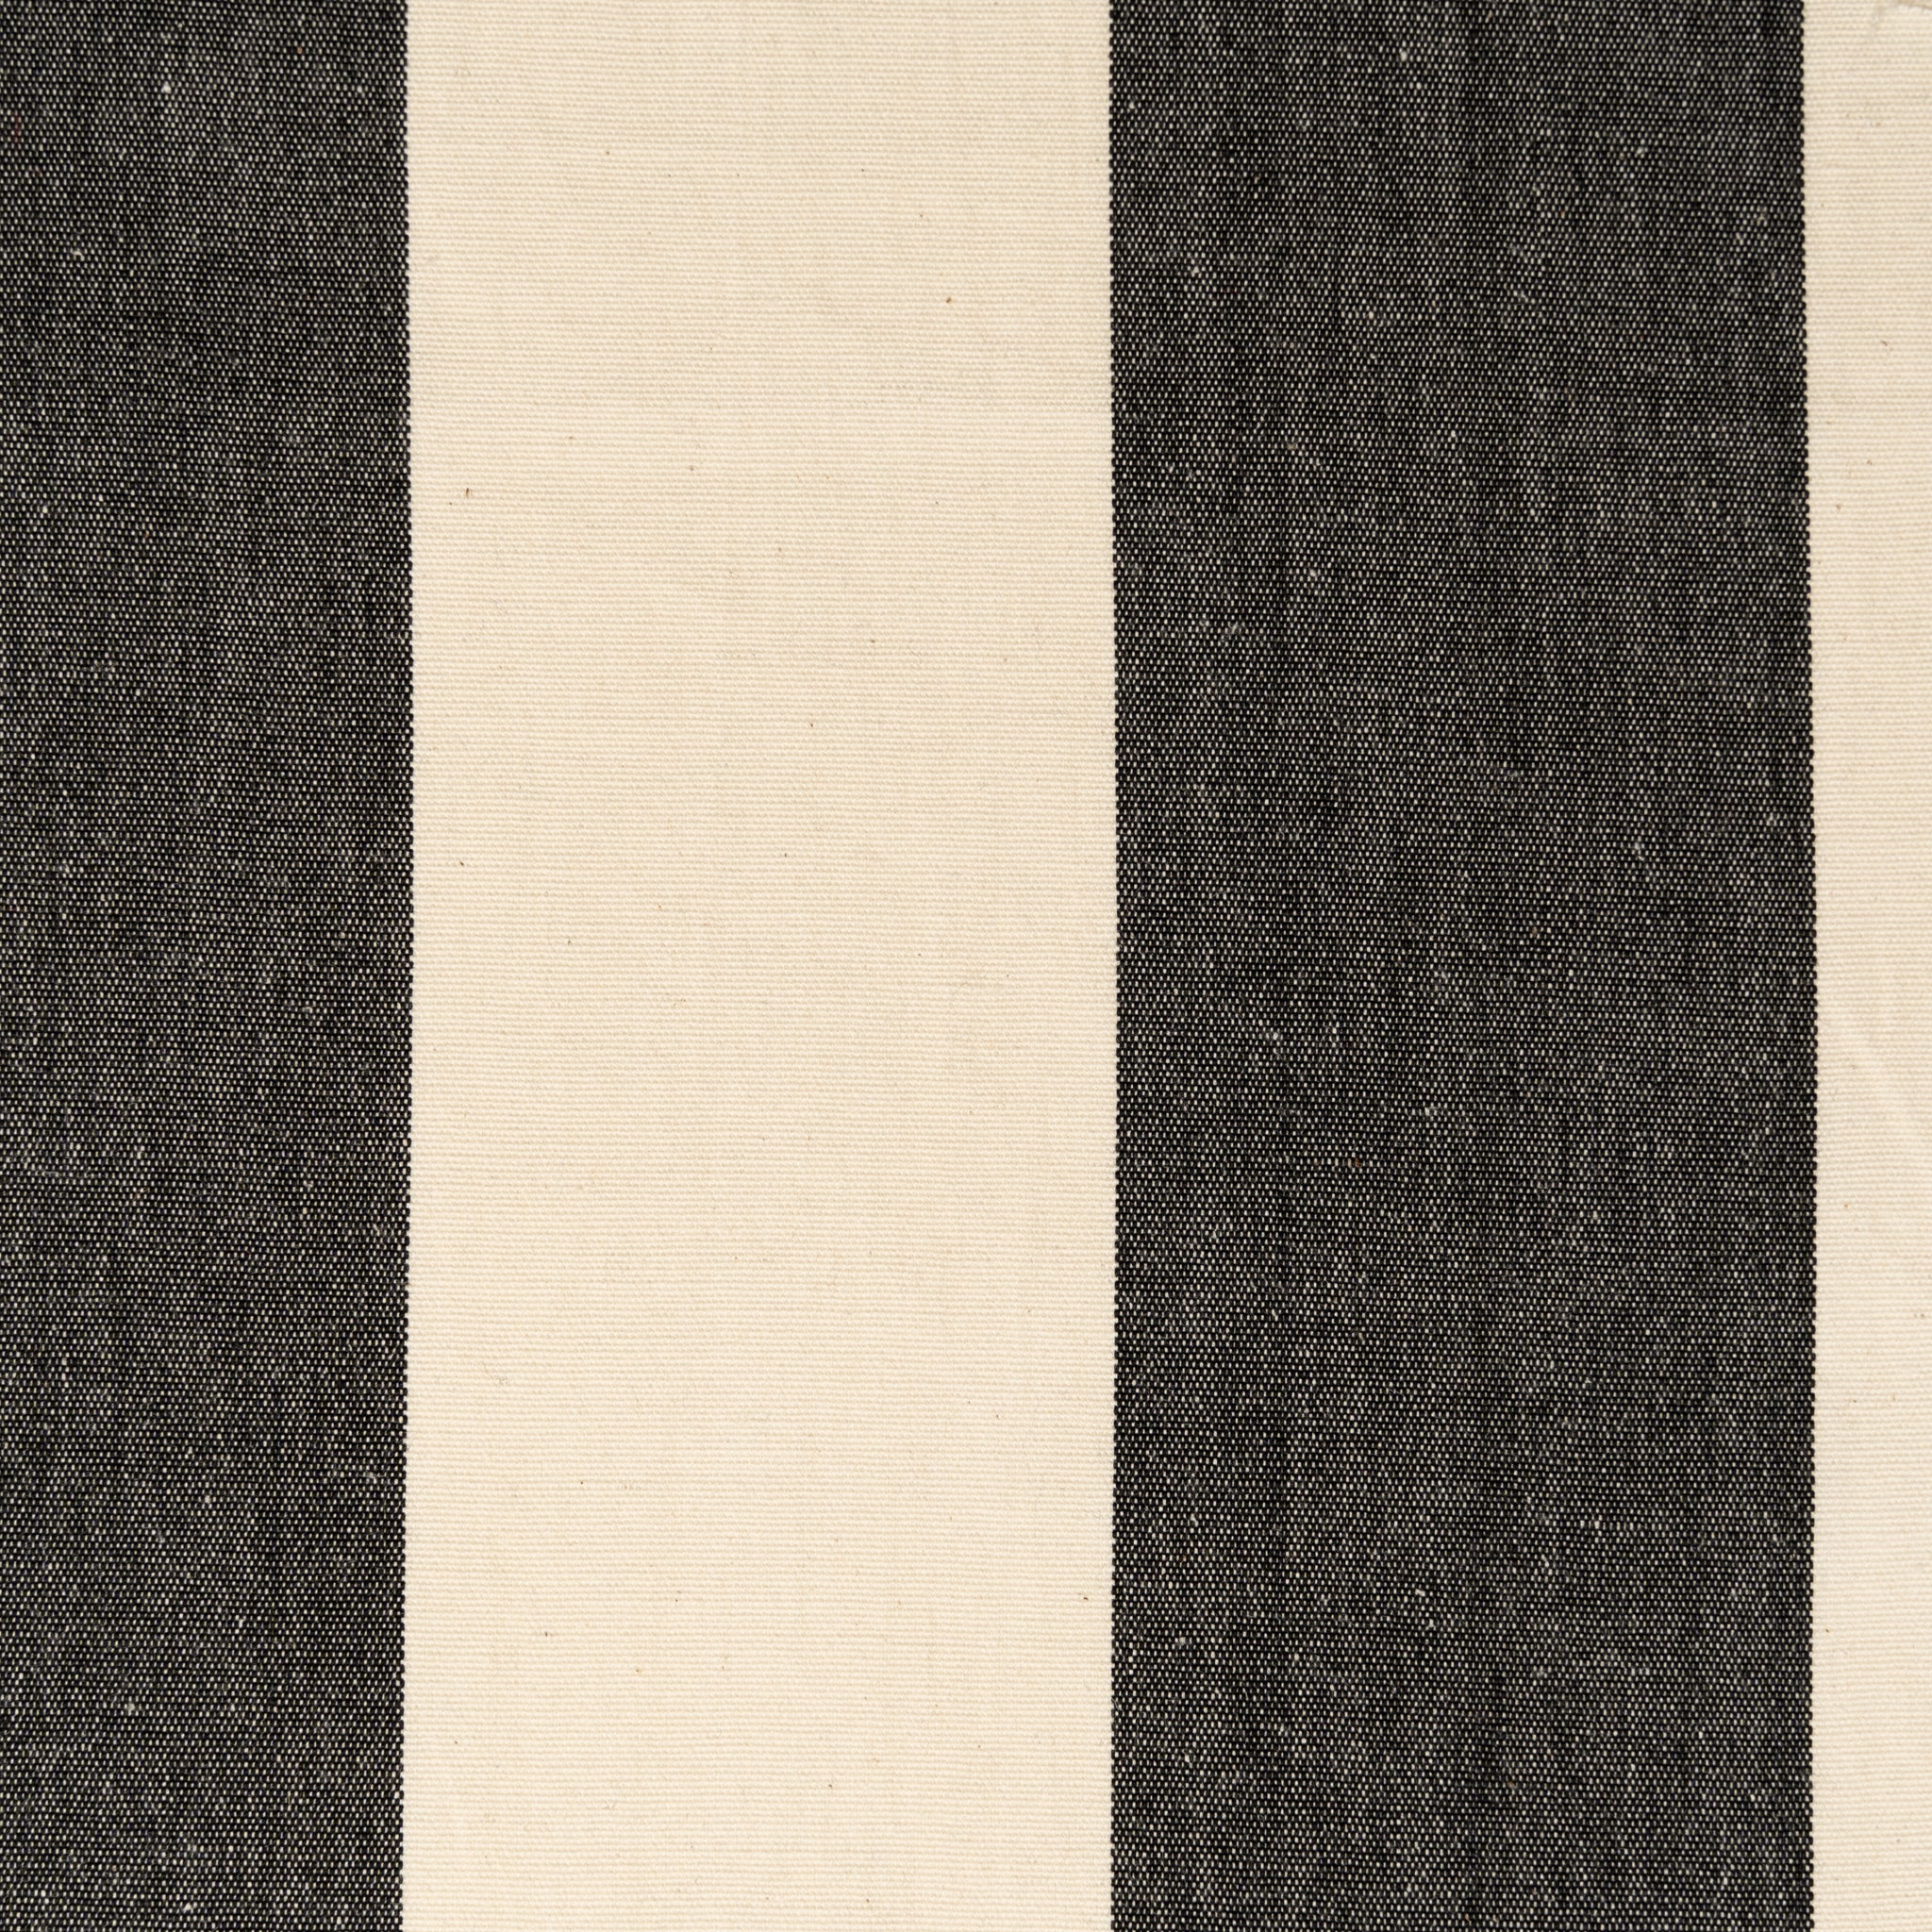 Woven Striped Fabric - Lizard - Black Bright